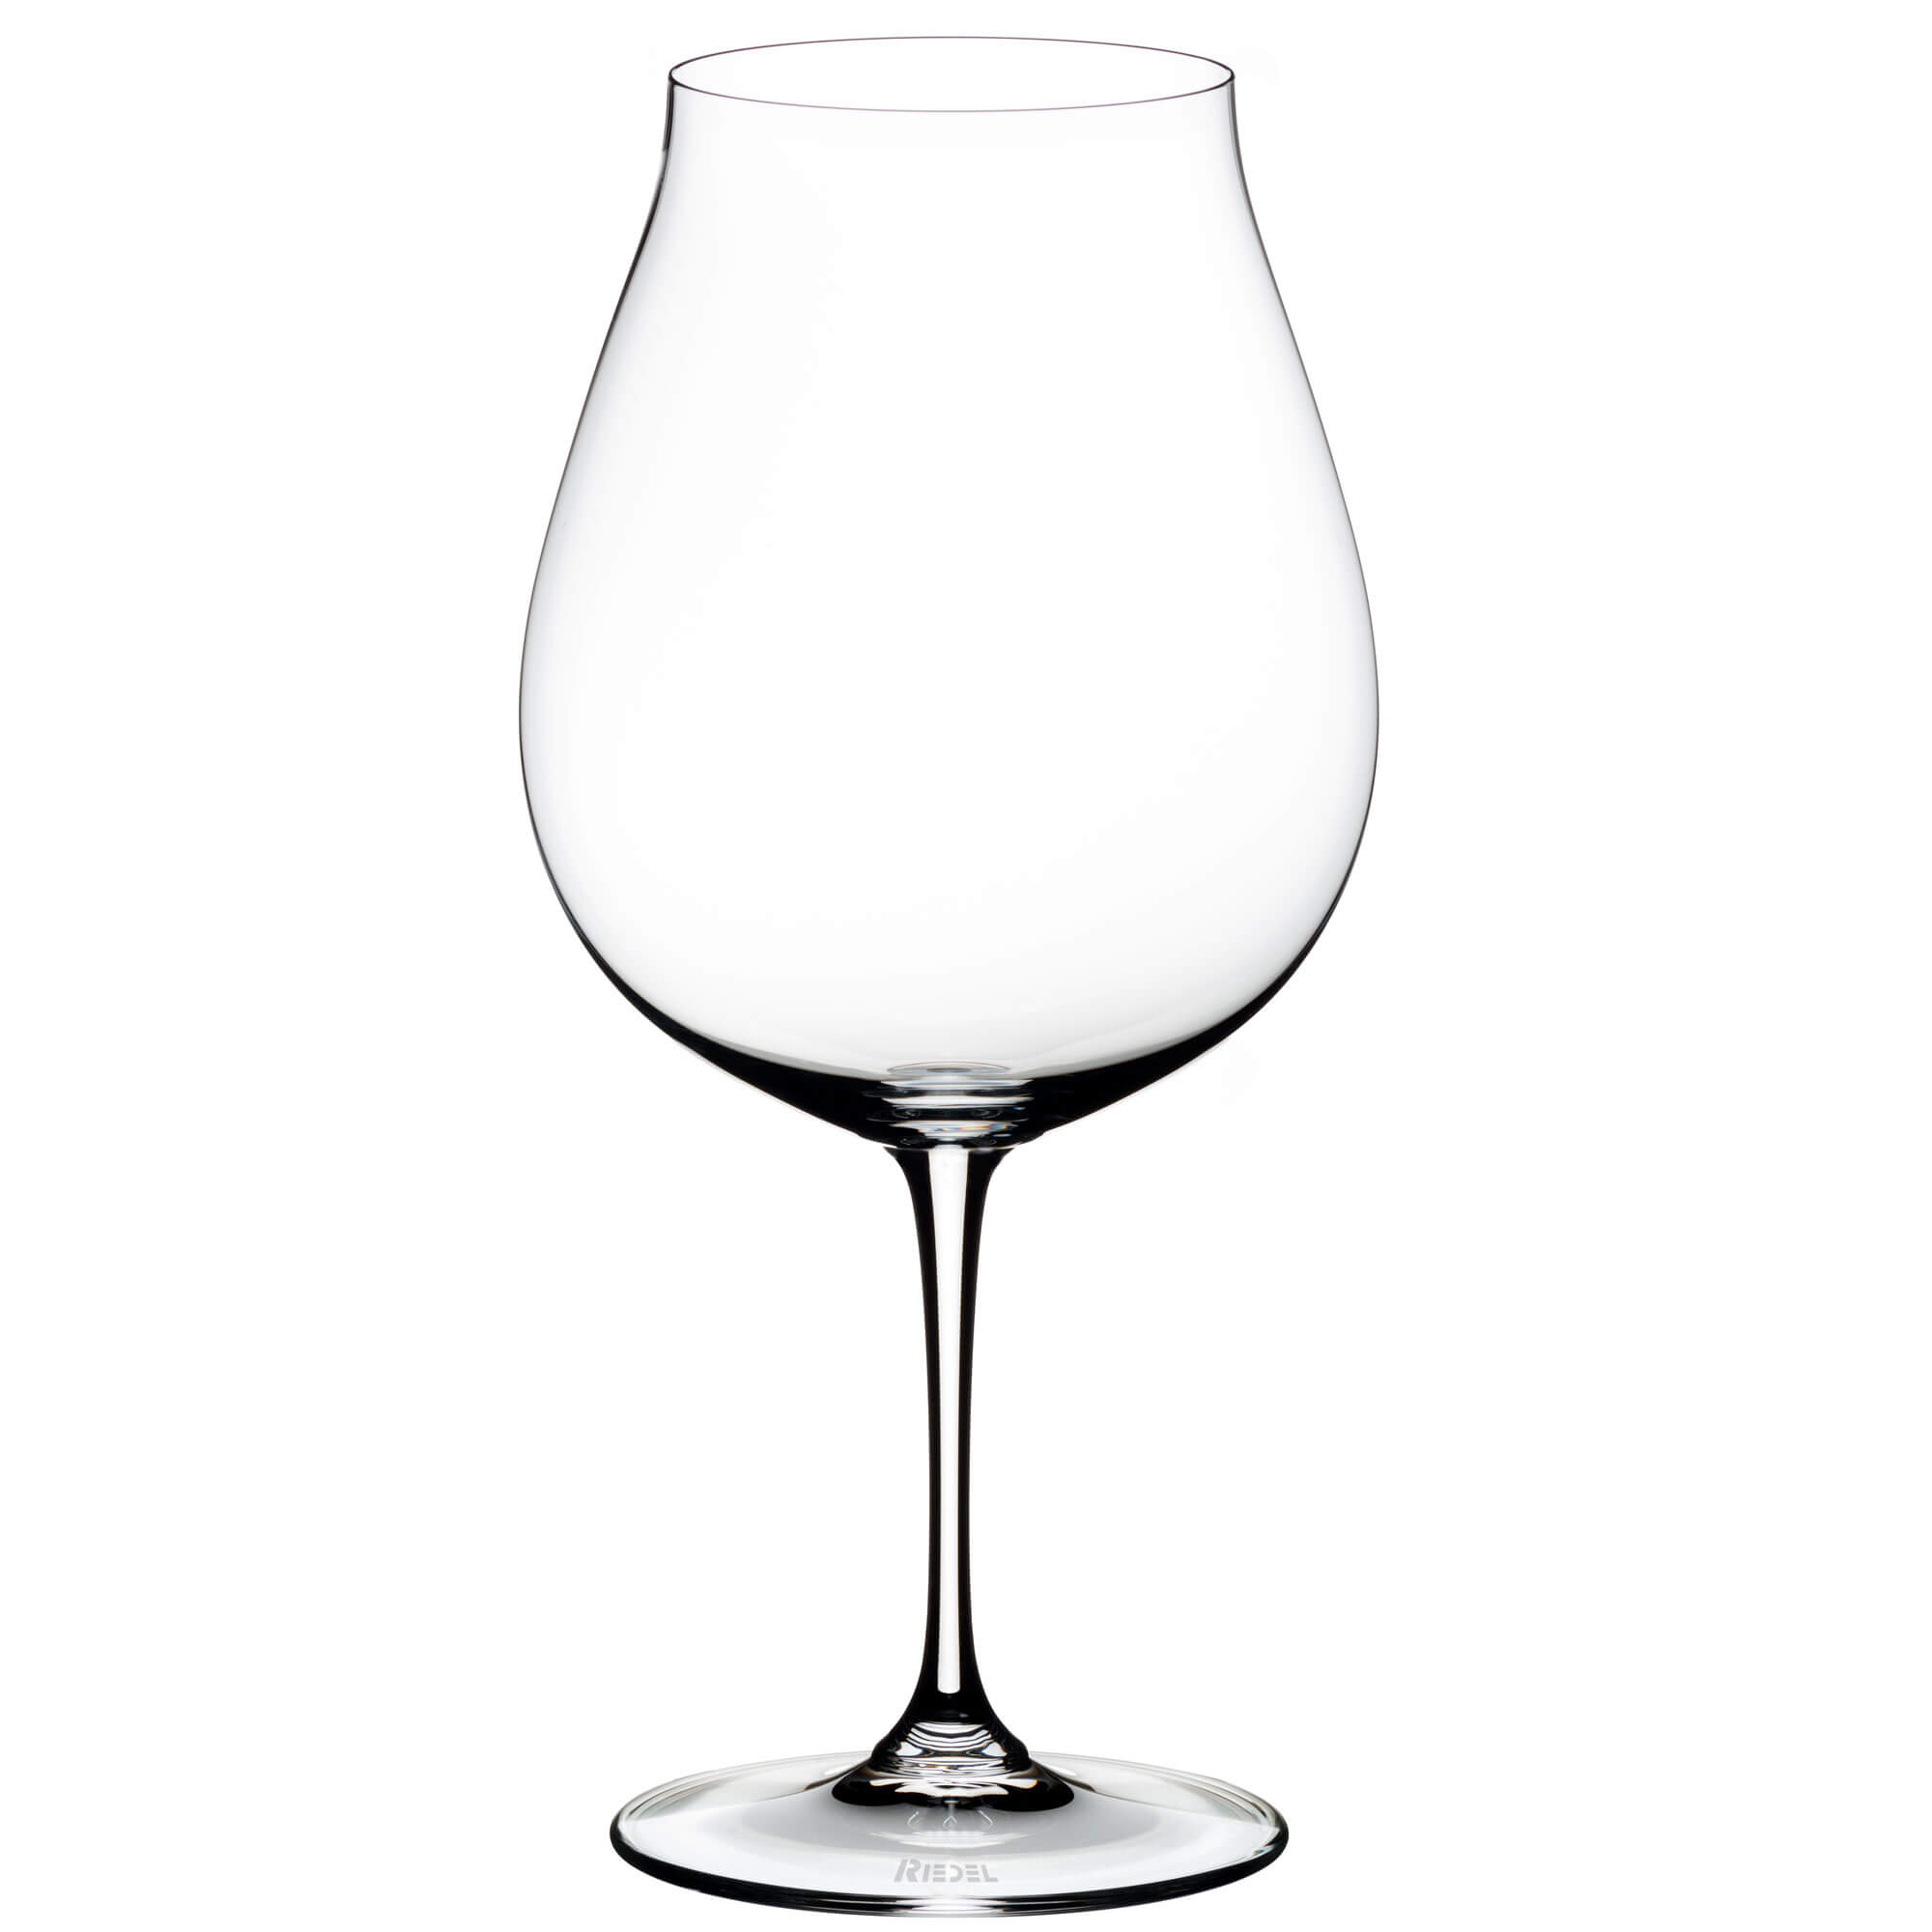 New World Pinot Noir glass Vinum, Riedel - 800ml (2 pcs.)